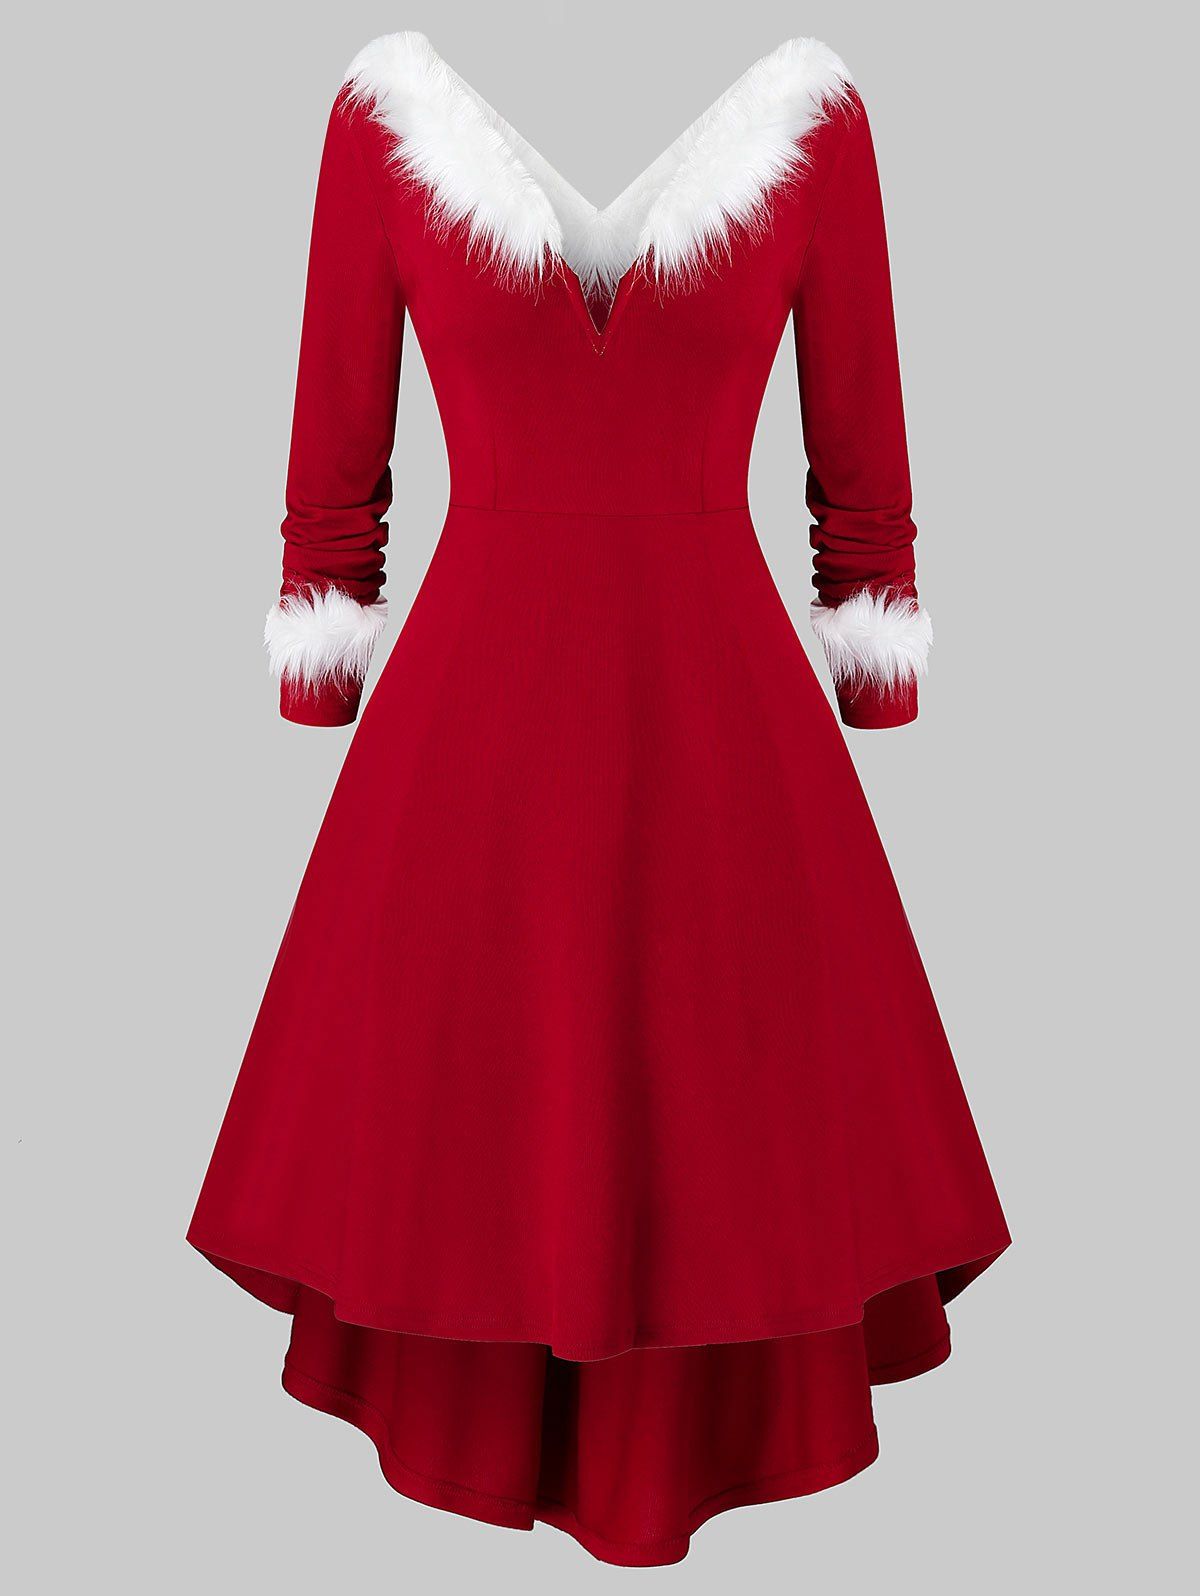 where to get christmas dresses